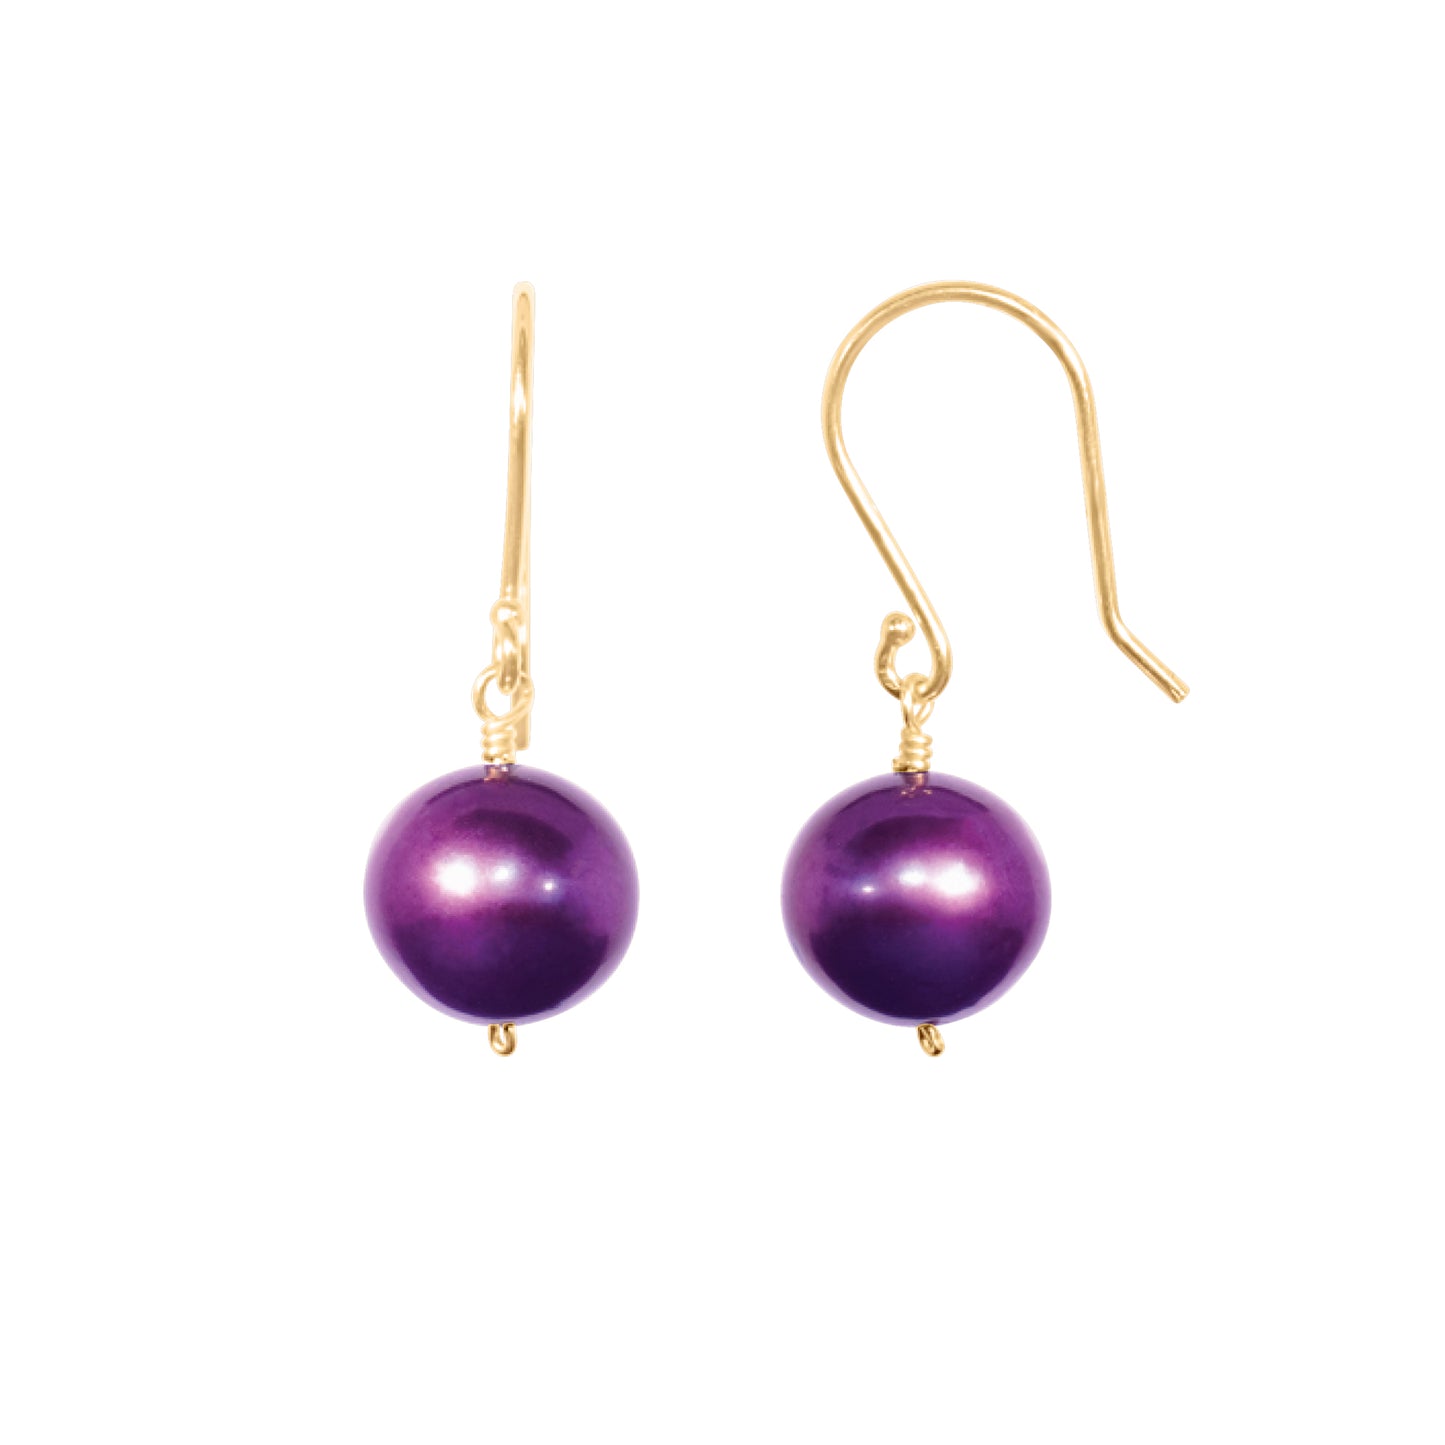 14k Purple/Plum Freshwater Pearl Necklace 72" & Earring Set